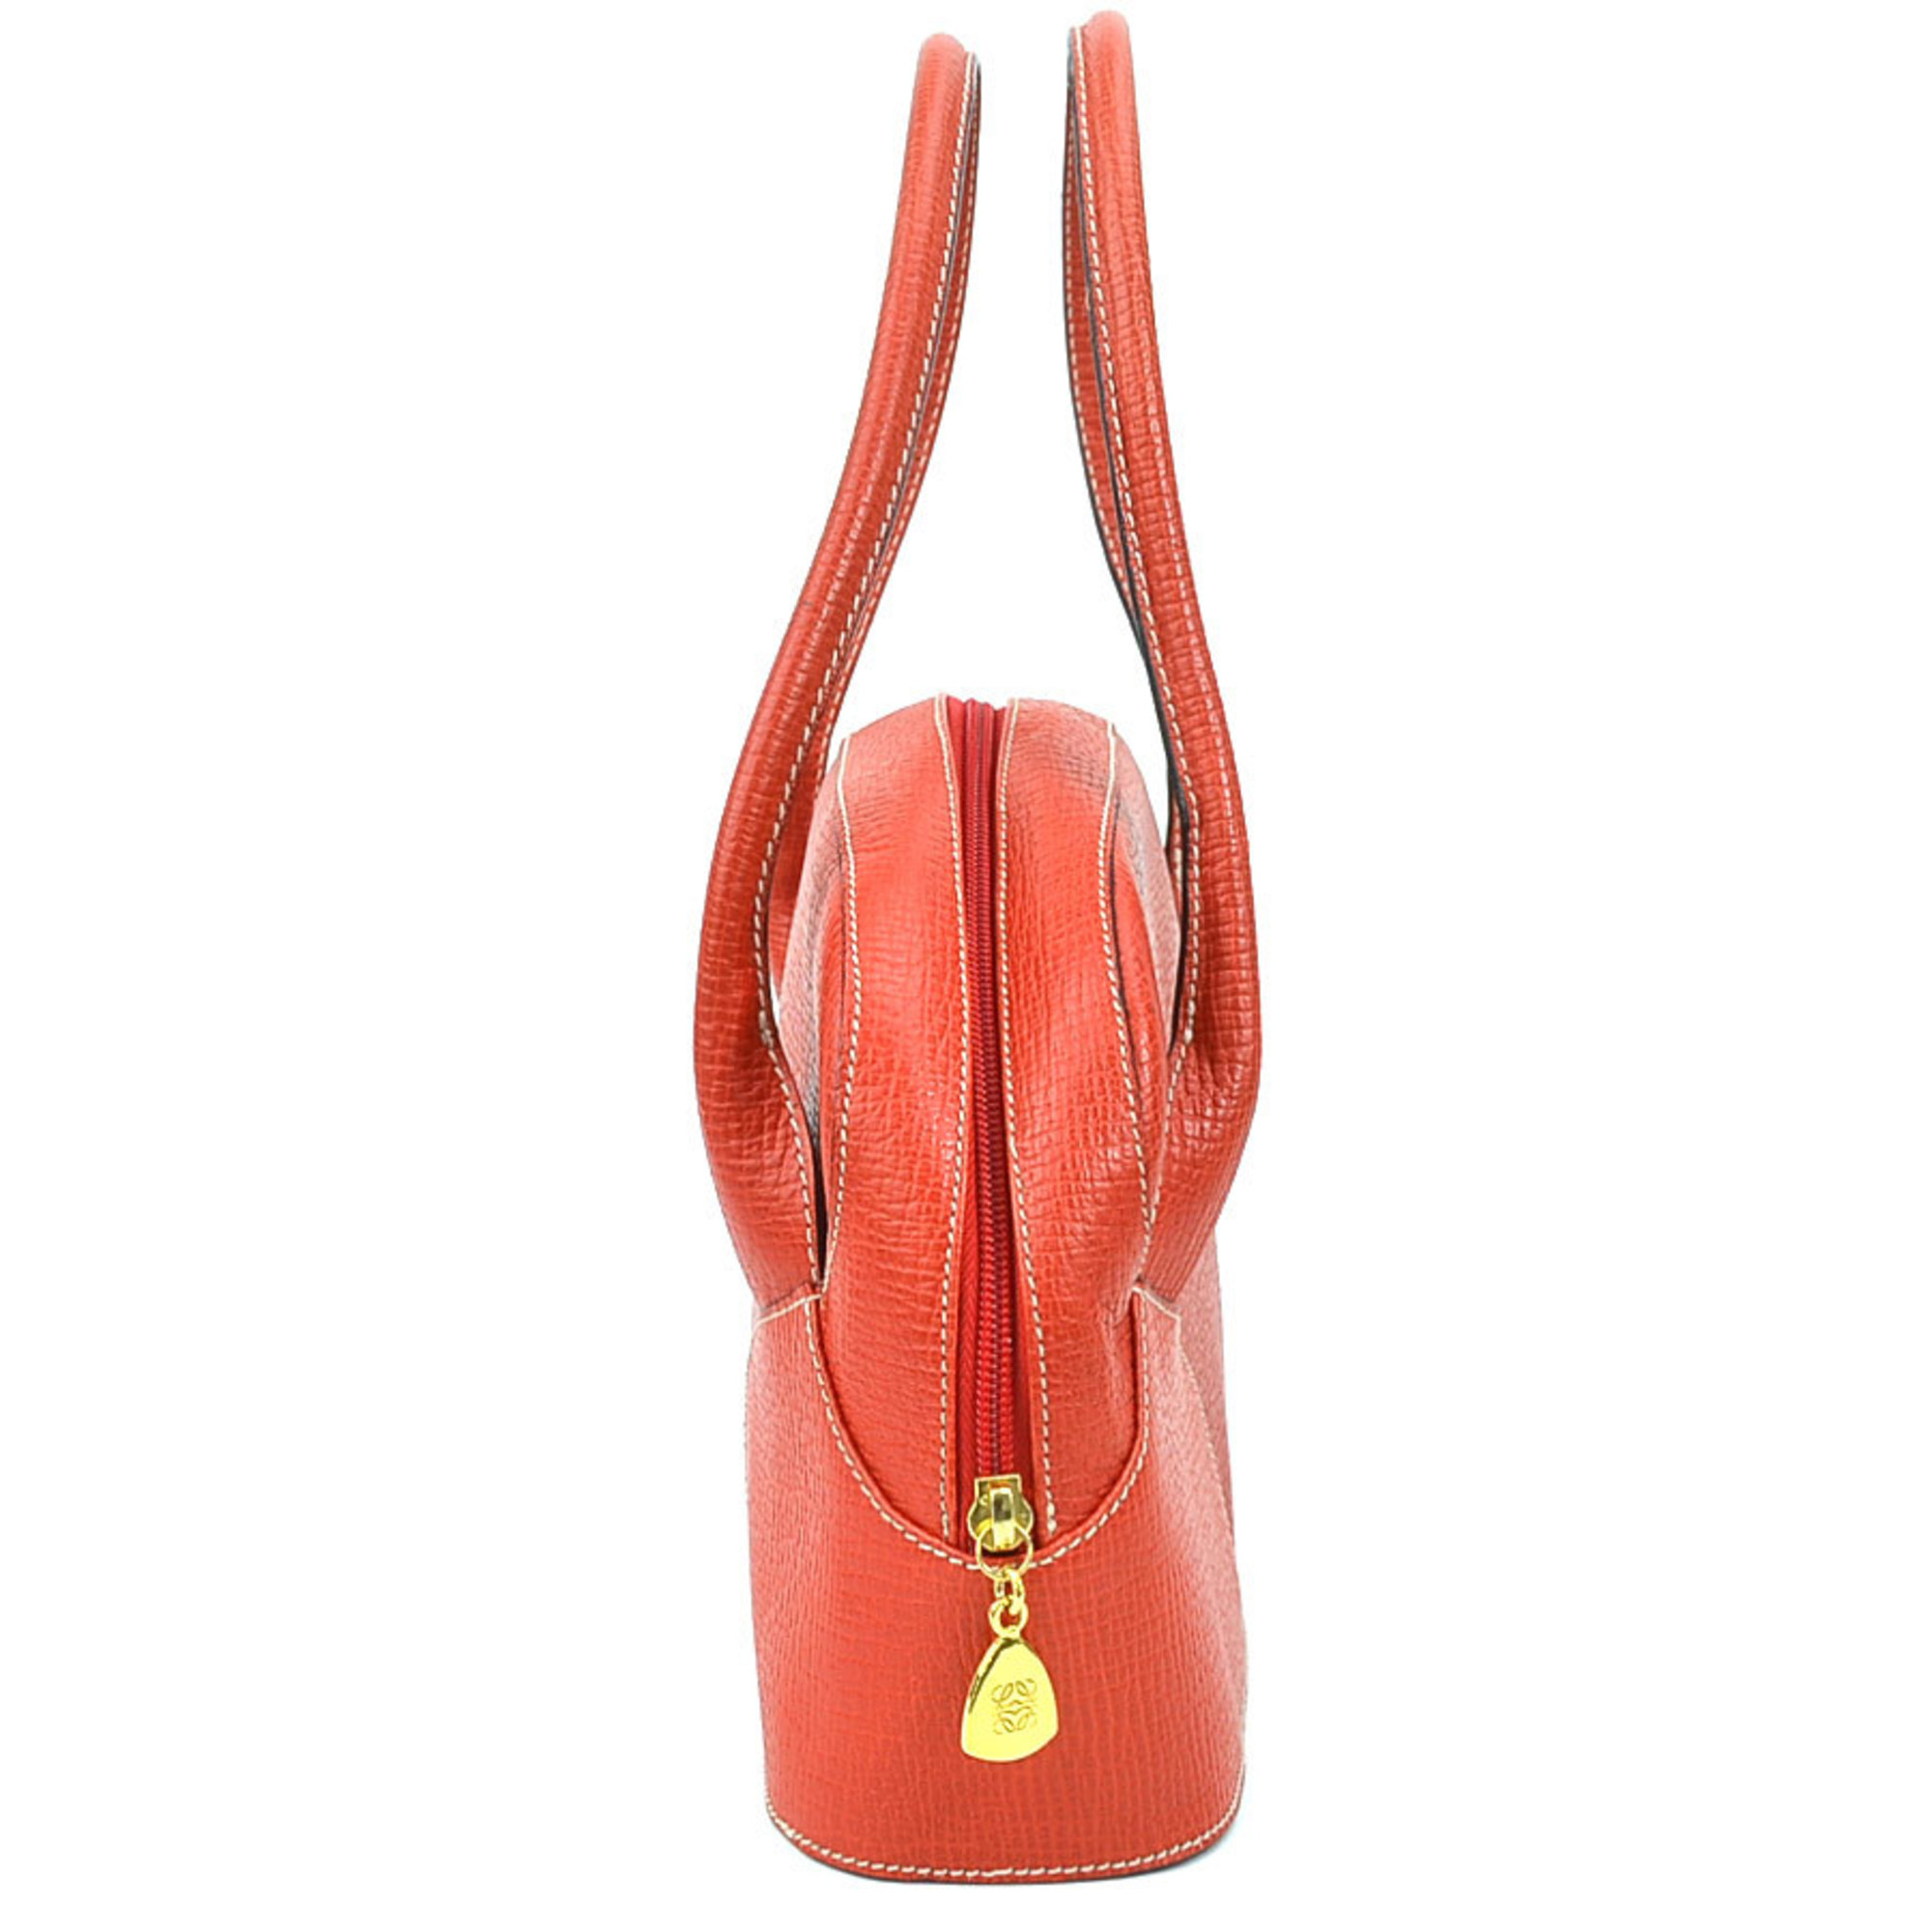 Loewe LOEWE handbag leather red gold ladies